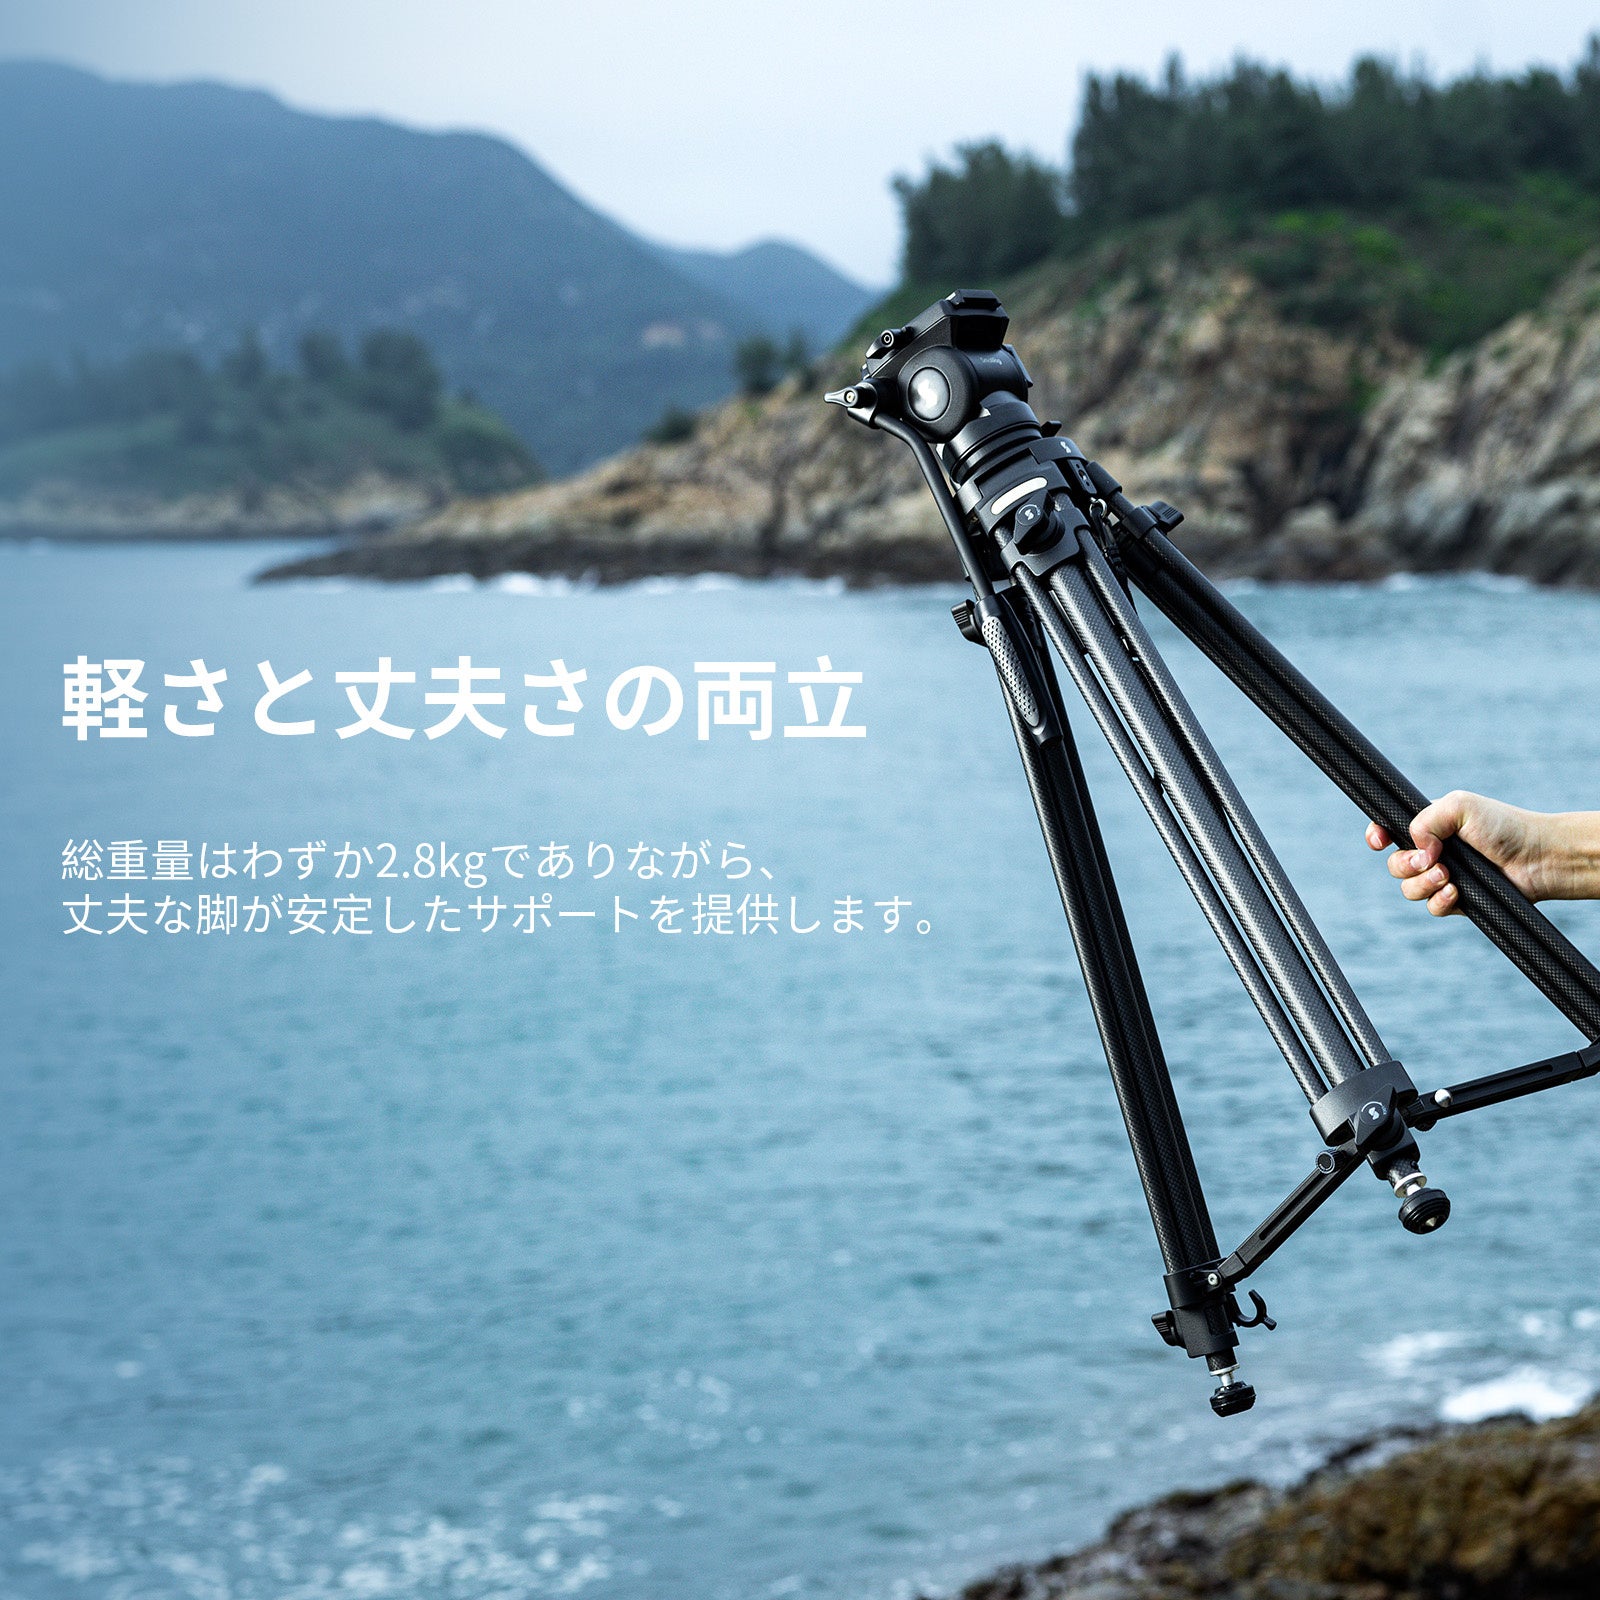 【新製品】SmallRig 軽量ビデオ三脚キットAD-50シリーズを発表!